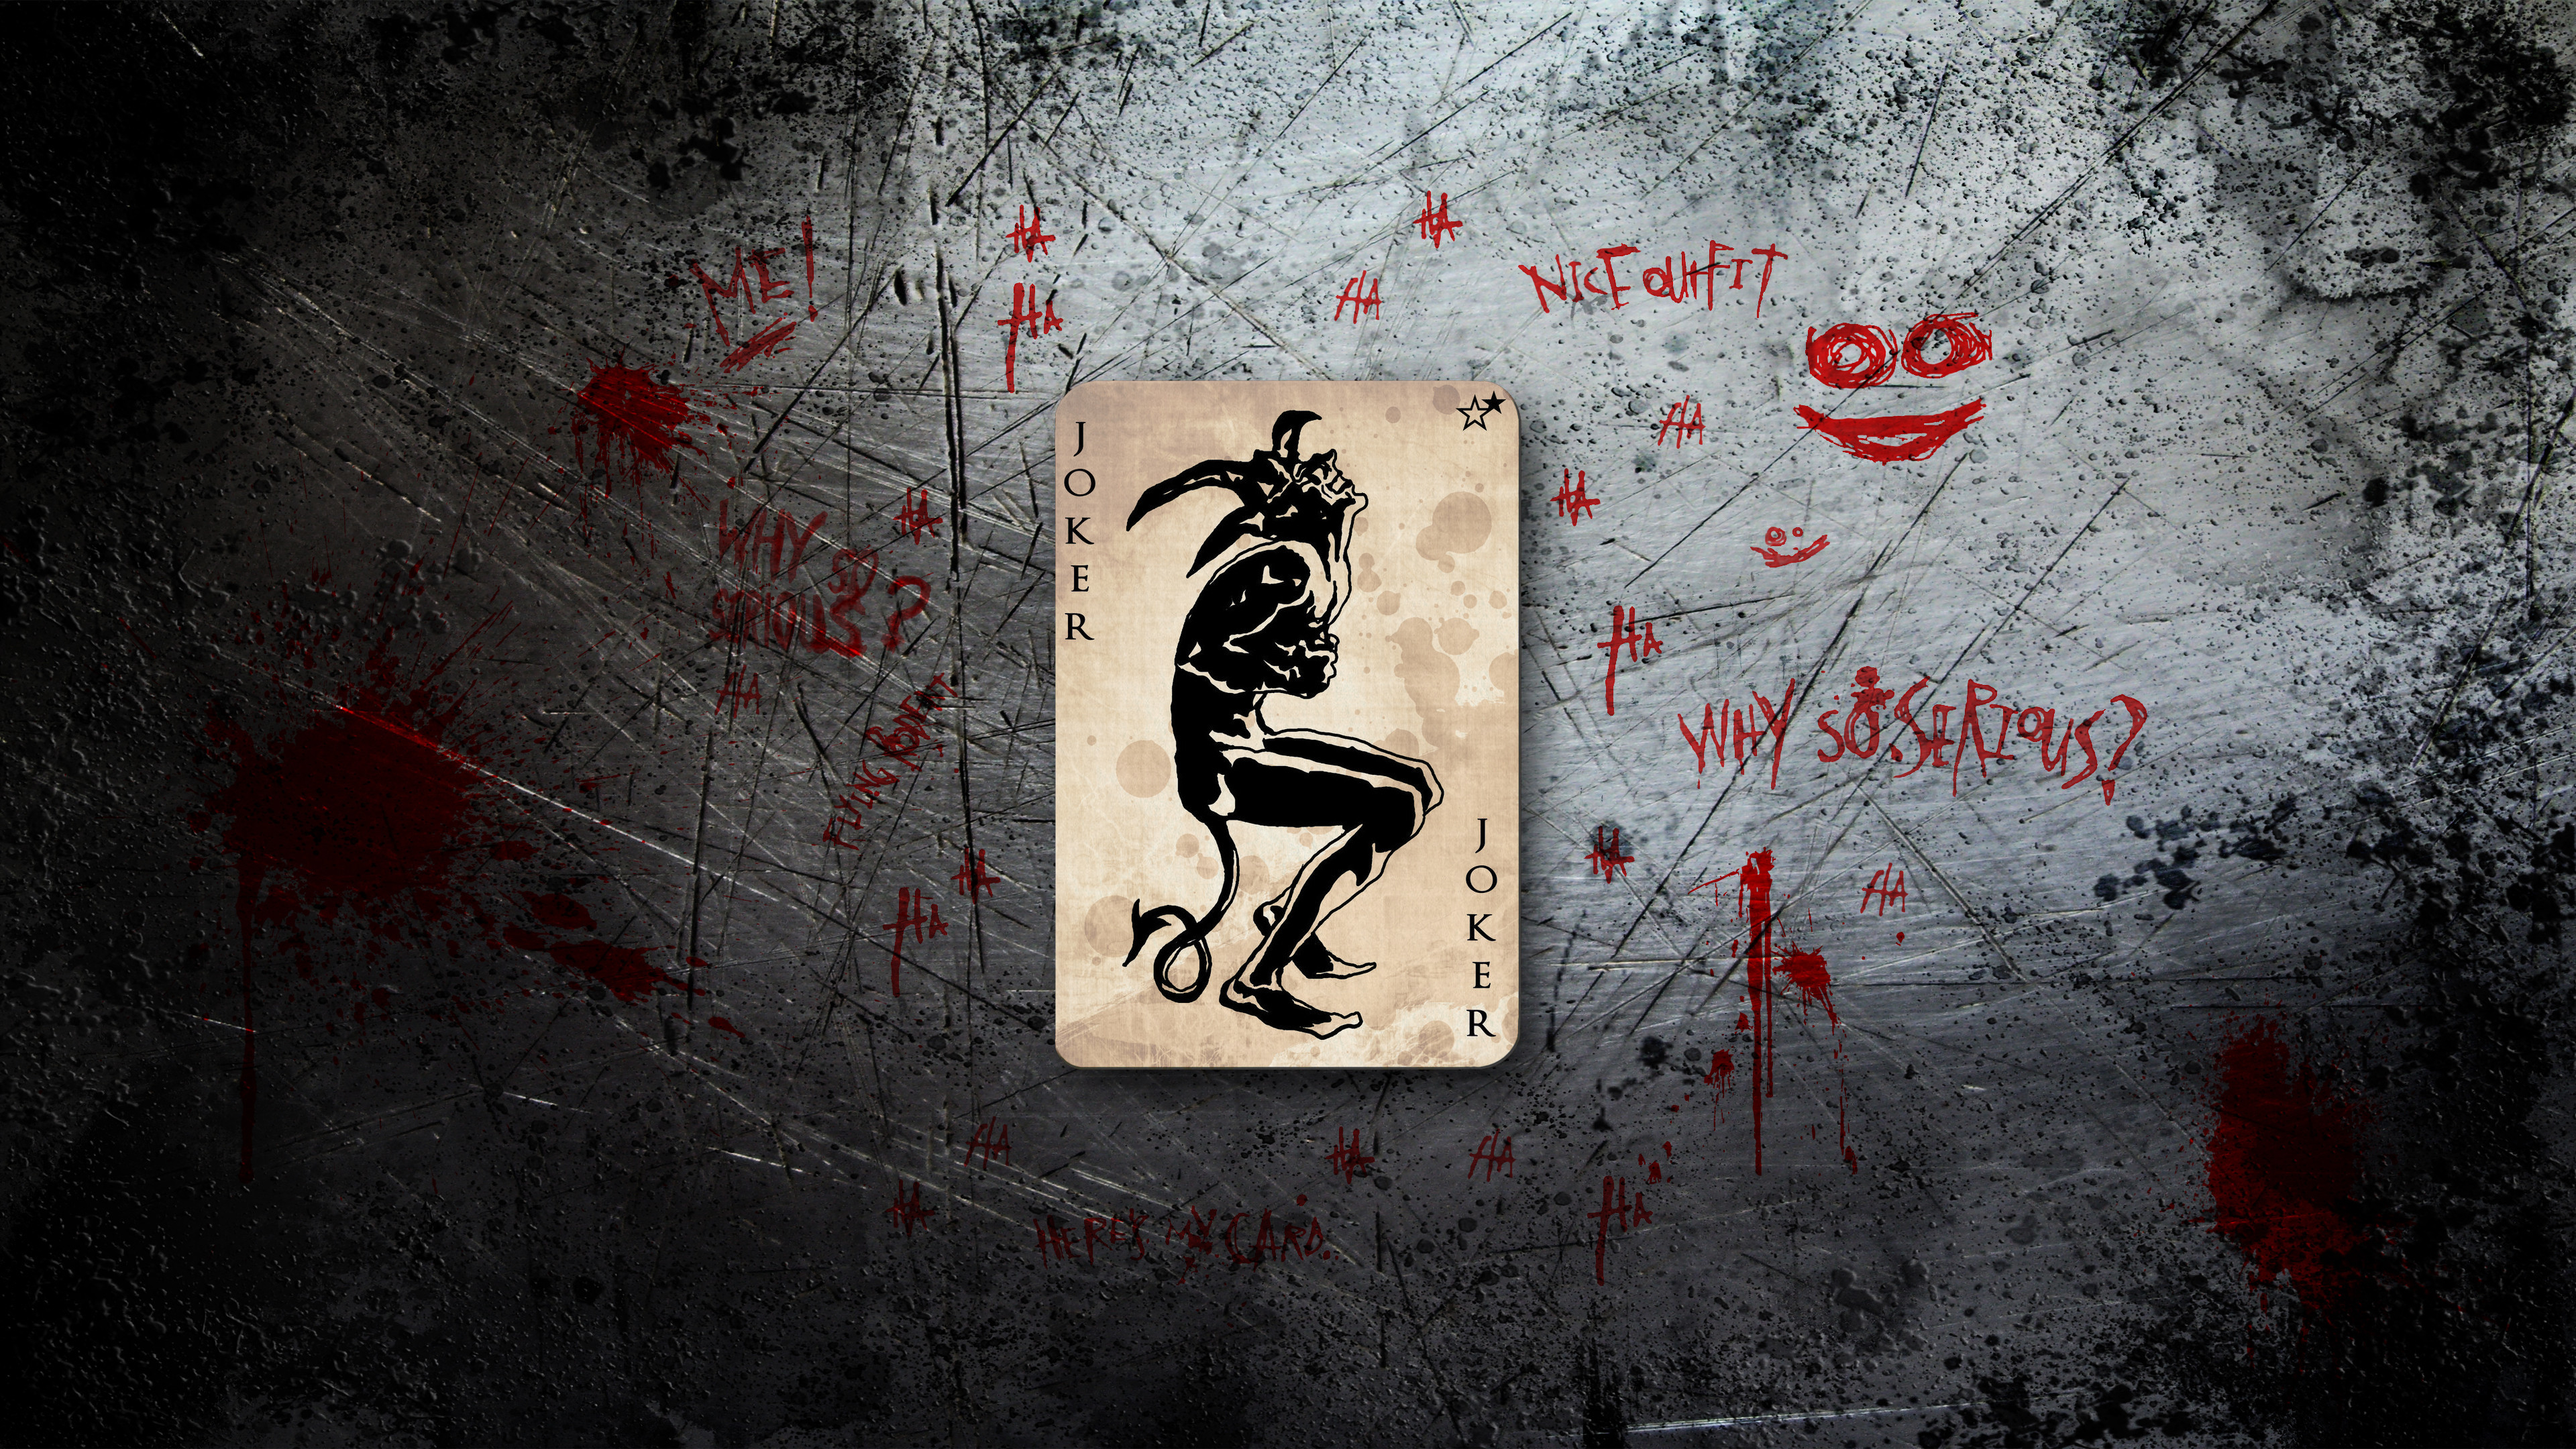 3840x2160 Joker Card Logo (The Dark Knight, DC Comics) 4K UHD 16:9 3840Ã2160